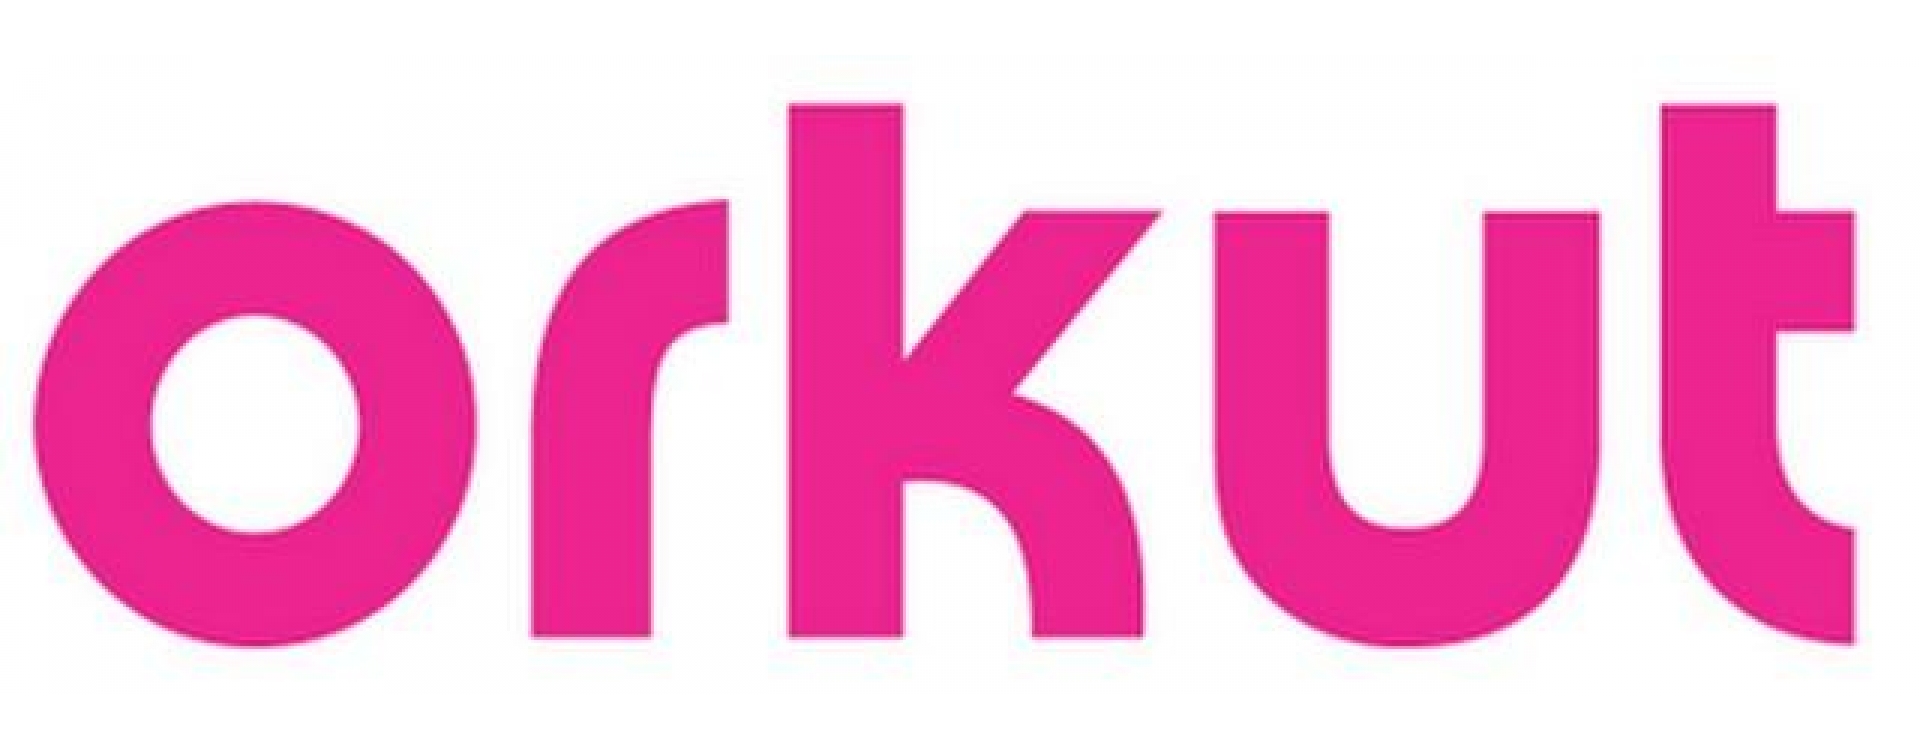 Orkut disse Adeus! Não salvei nada? E agora? 